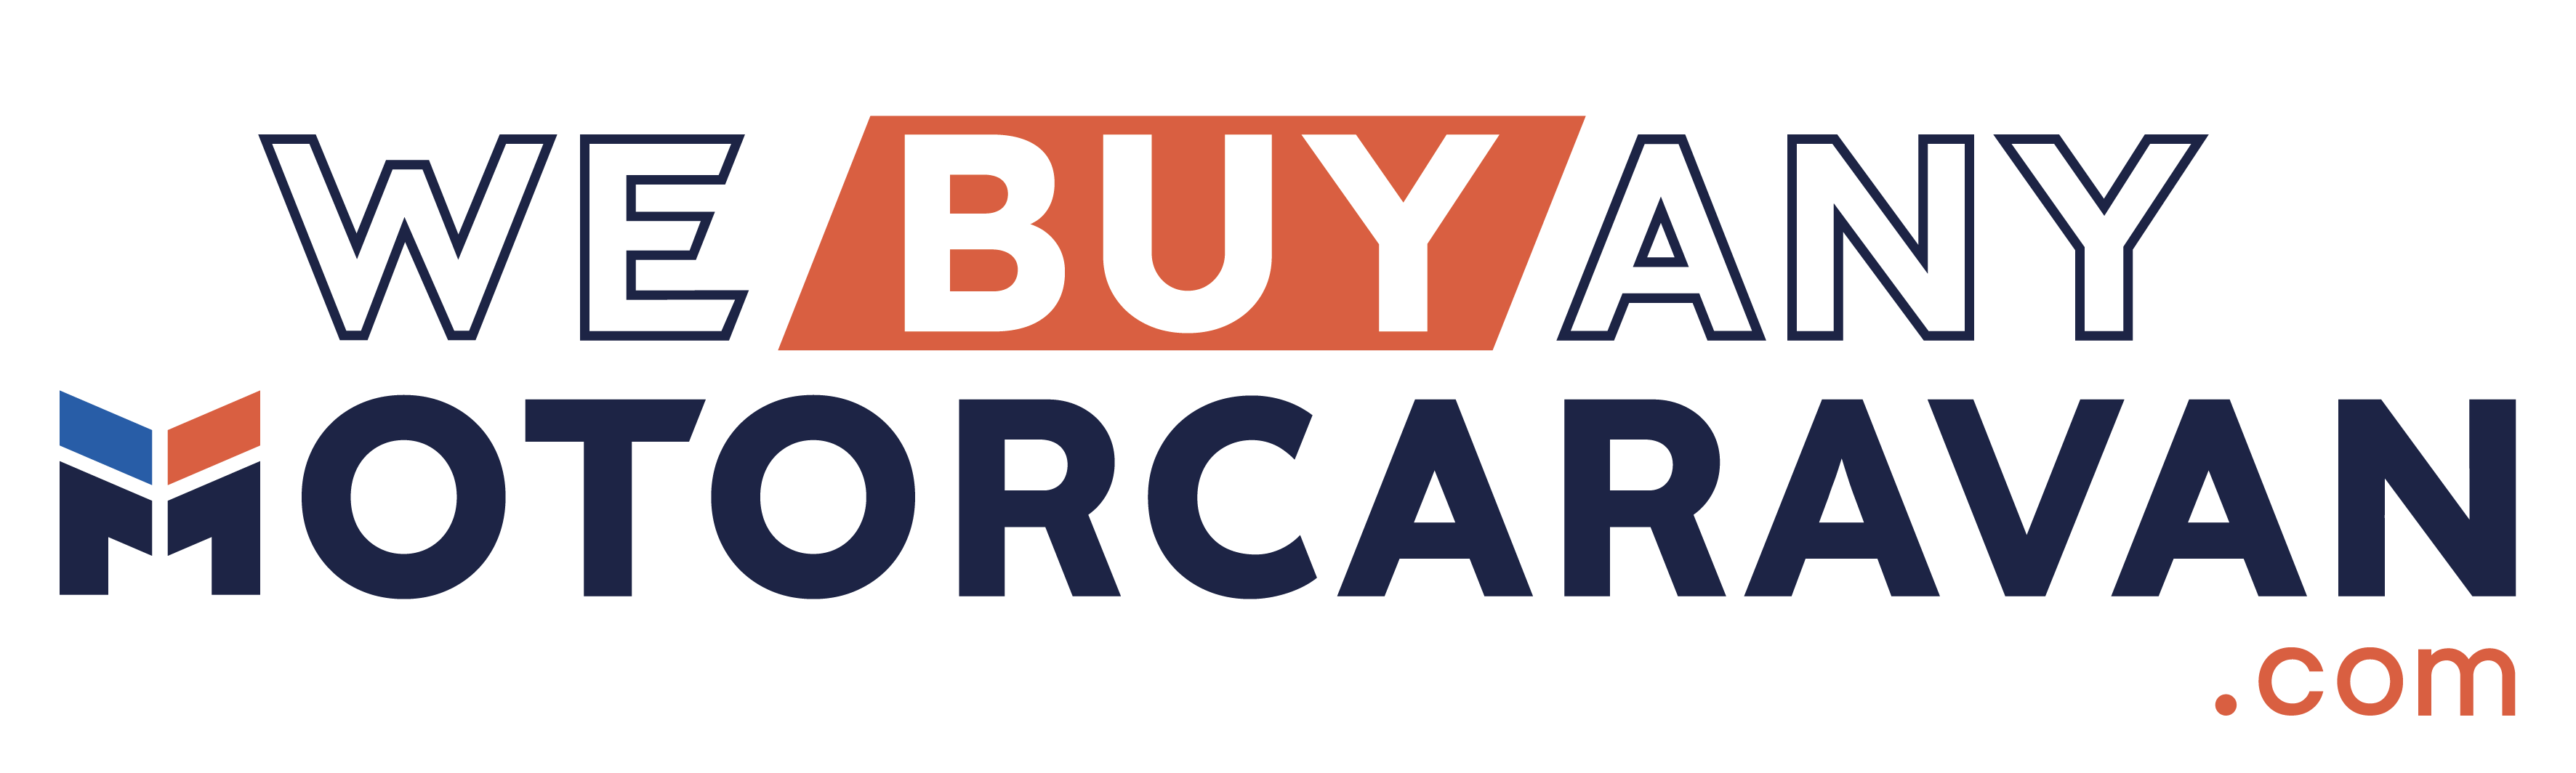 We buy any motorcaravan Logo